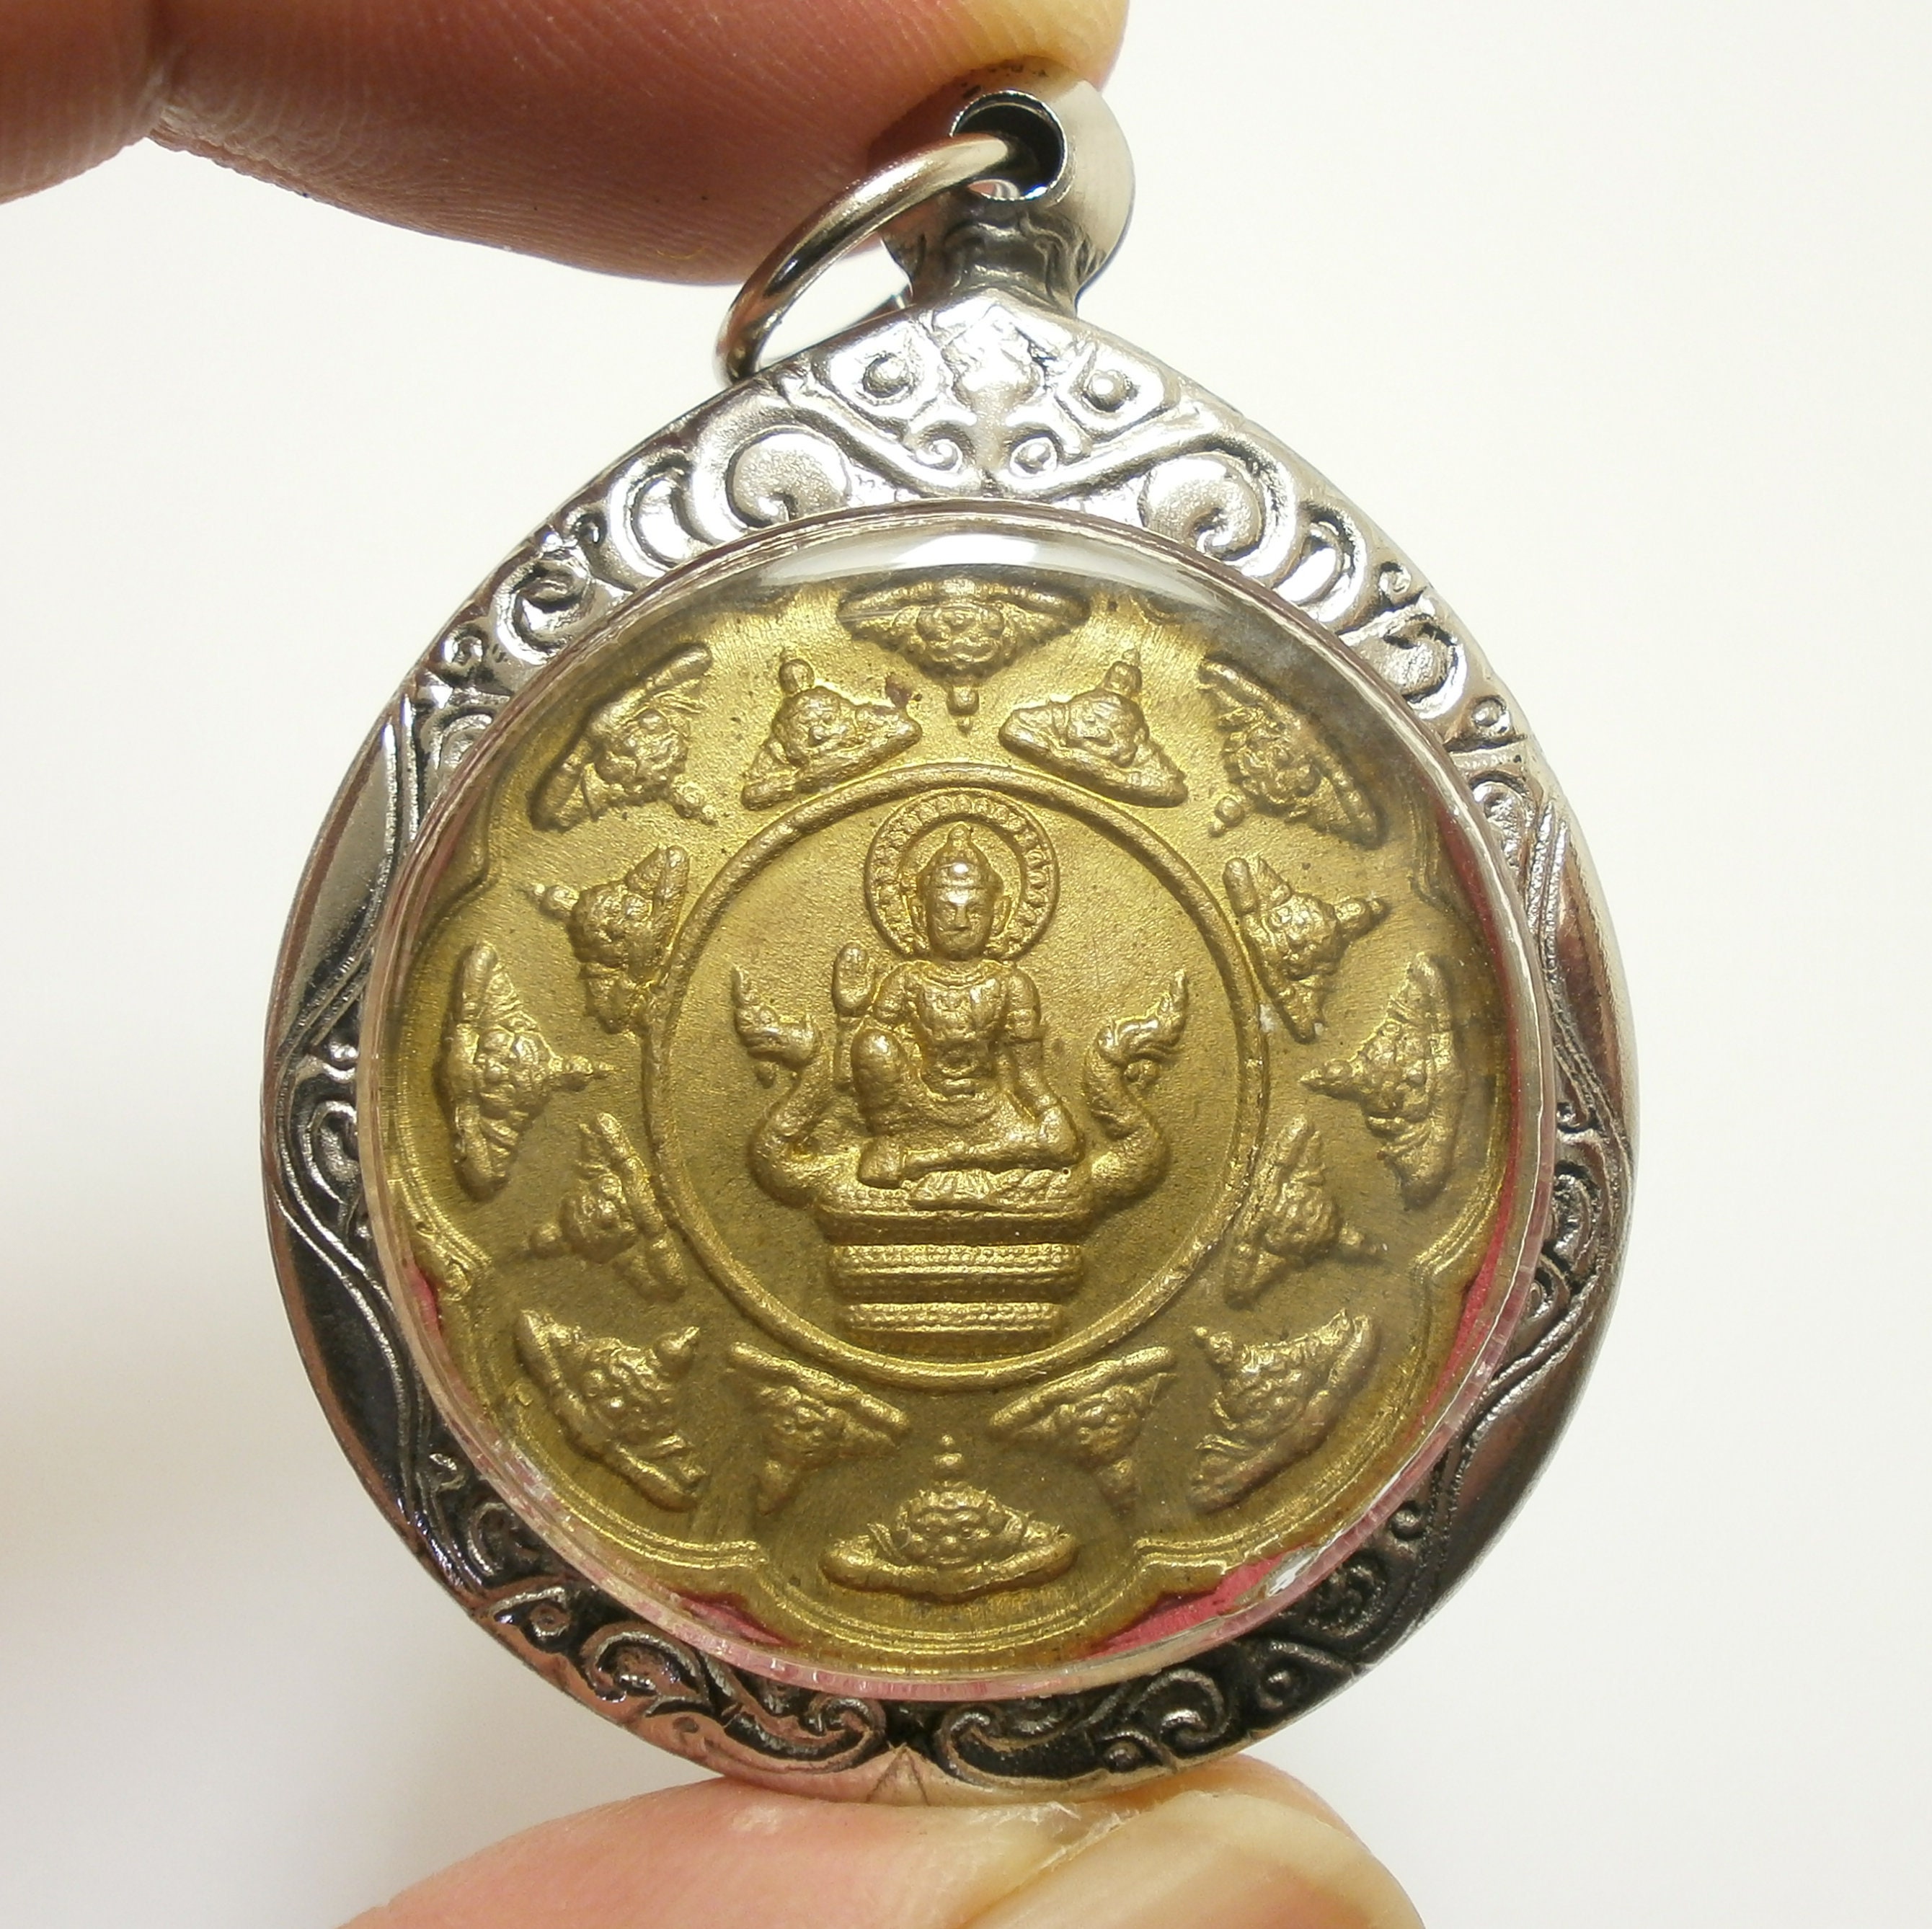 Jatukham Rammathep Jatukam Ramathep Buddha Naga Rahu Amulet Pendant Success Rich Miracle Maker & Life Protection Thailand Lucky Charm Gift